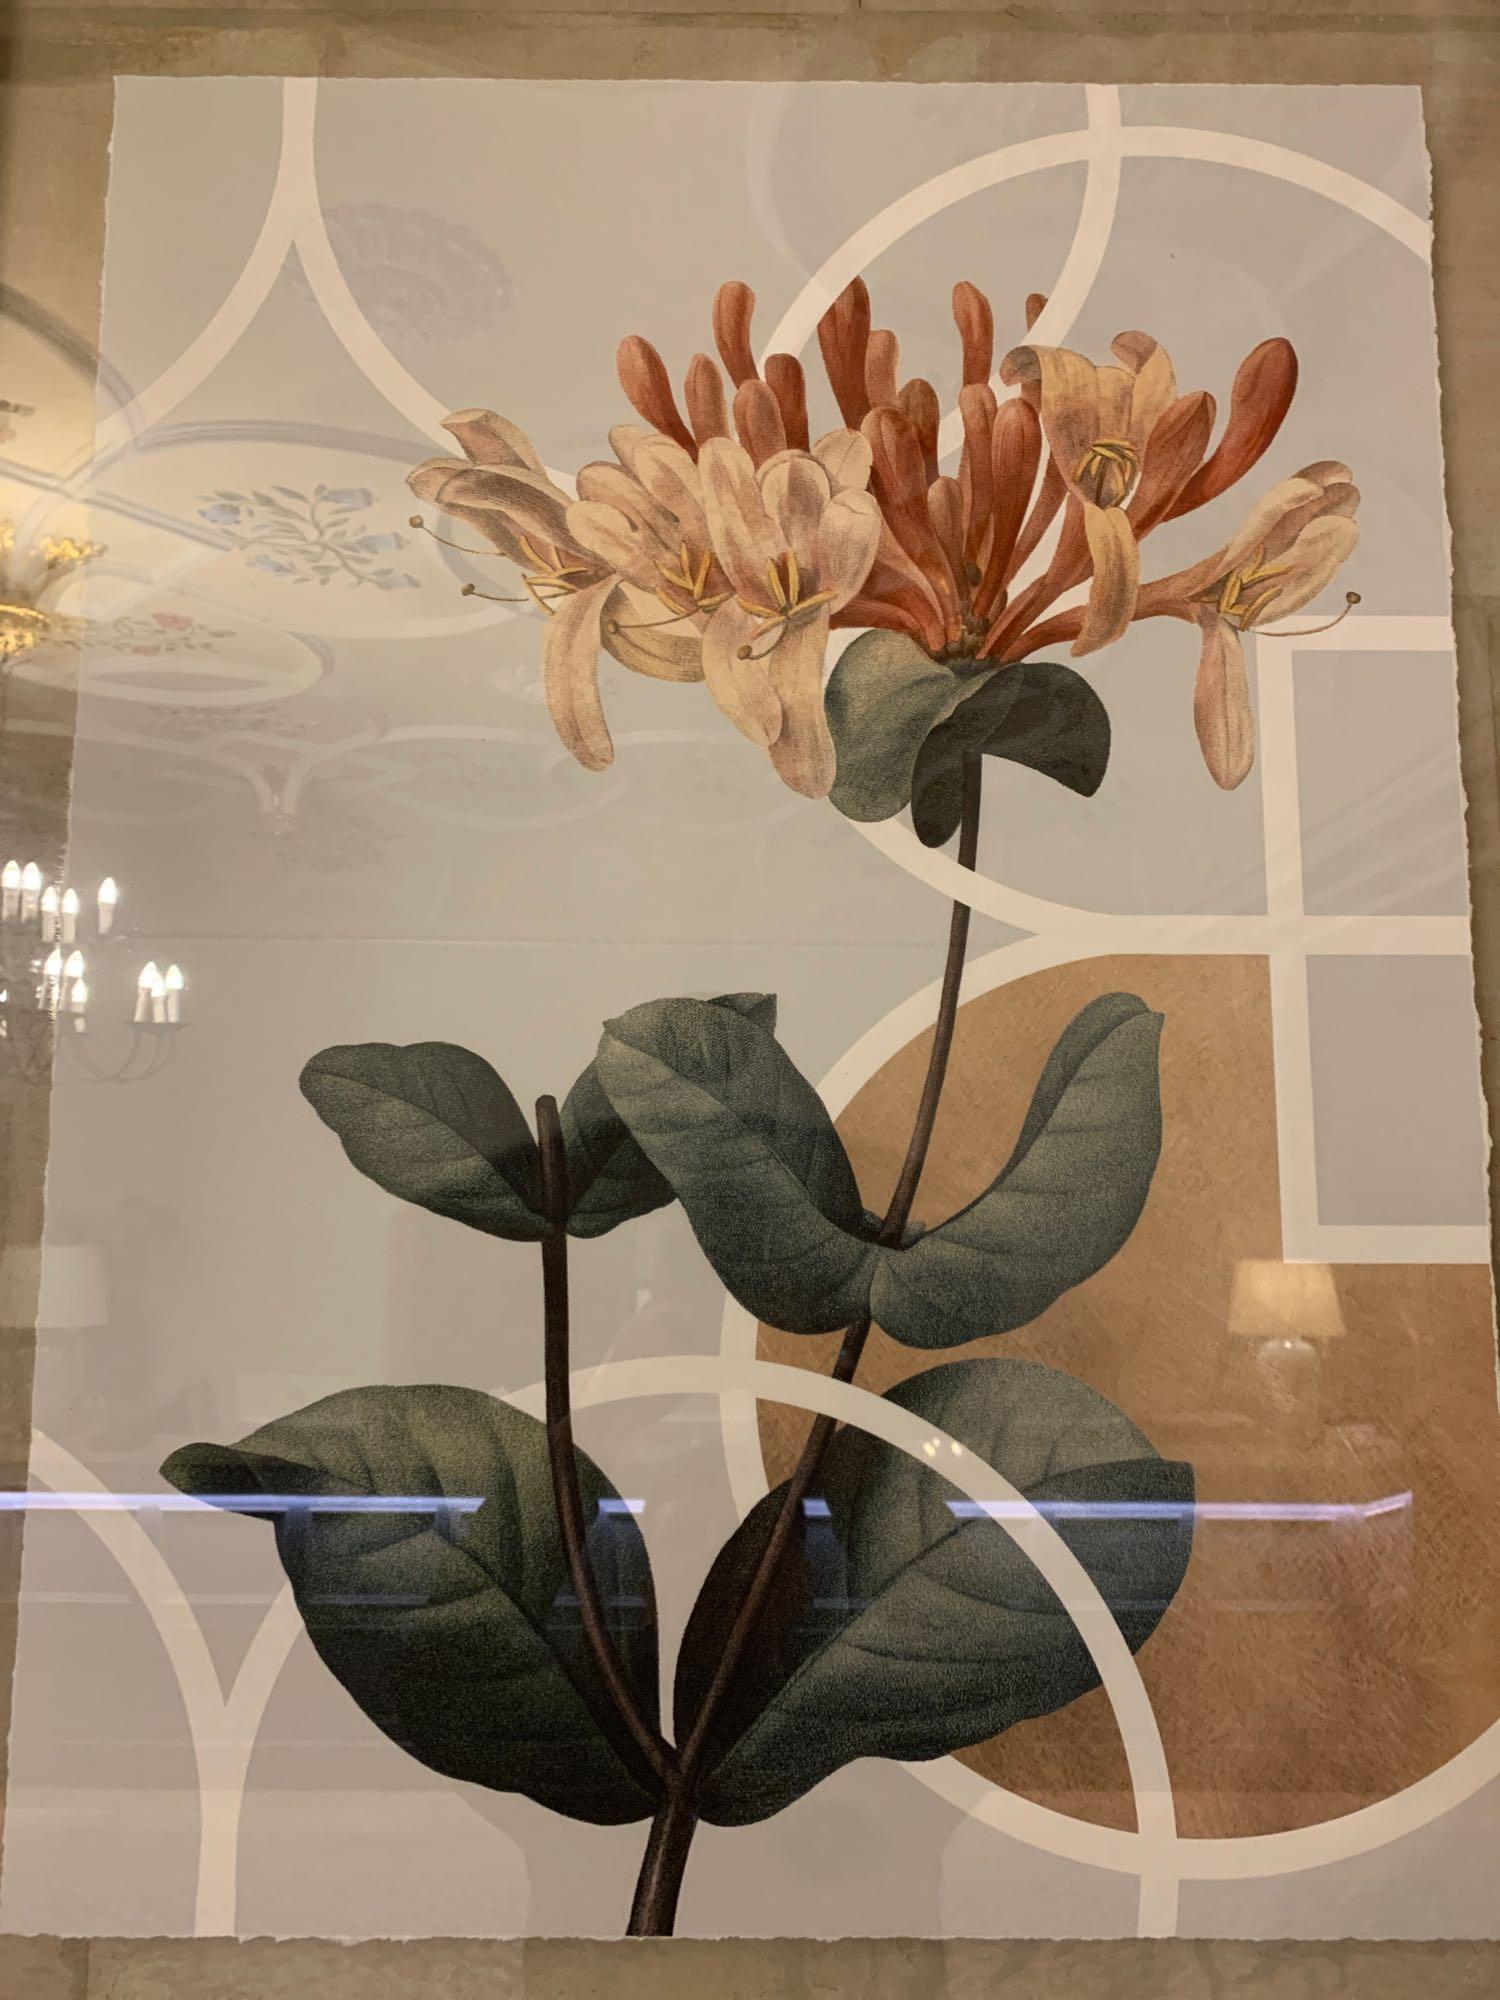 Elegant Clutter framed boatanical print 90 x 1110cm ( Reception / Tudor ) - Image 2 of 3